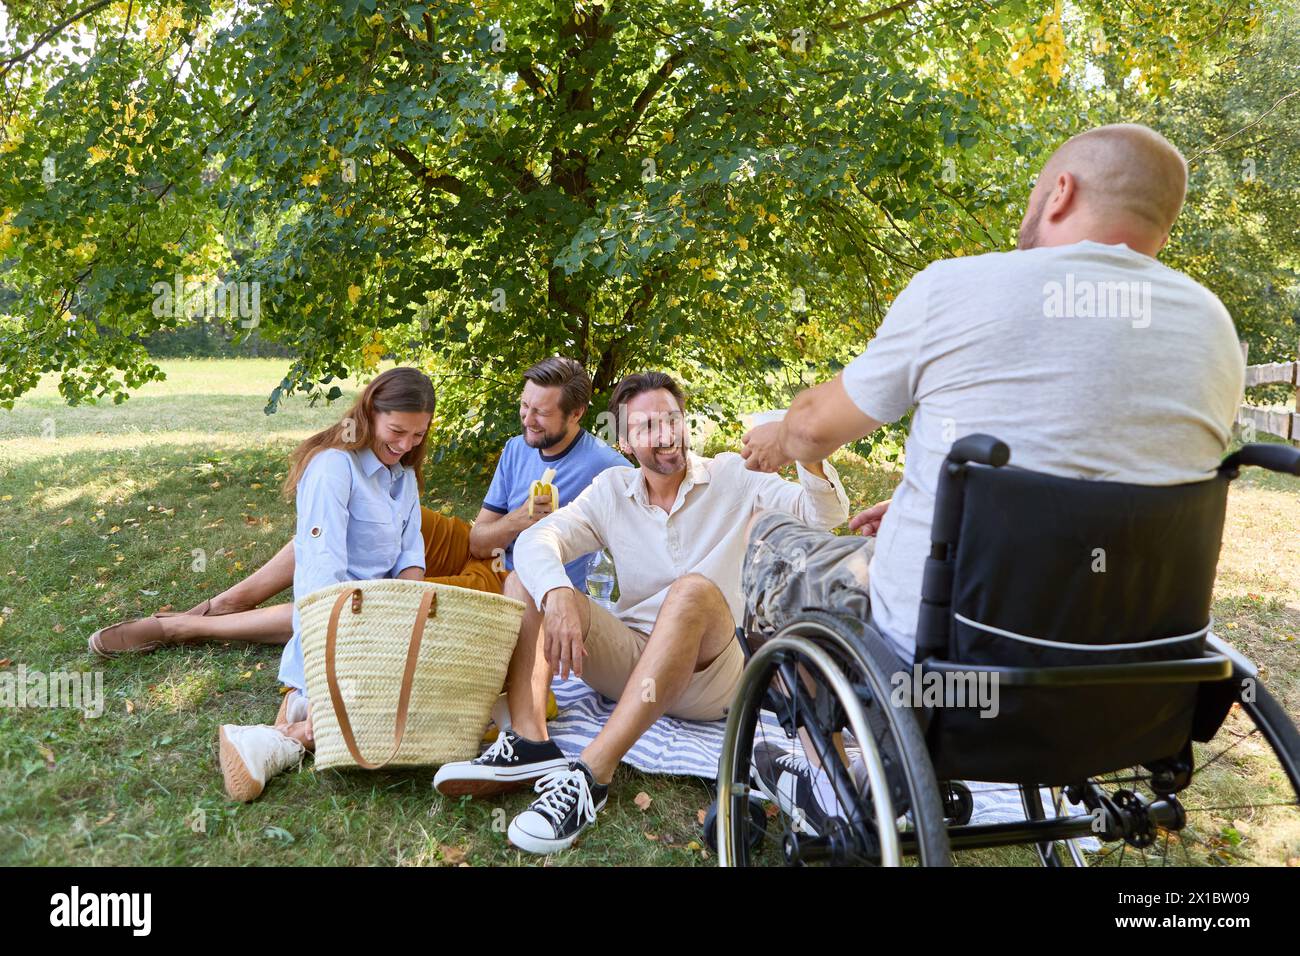 Inklusive Treffen von Freunden im Freien mit einer Person im Rollstuhl, mit glücklichen Momenten in einer sonnigen Parkszene. Stockfoto